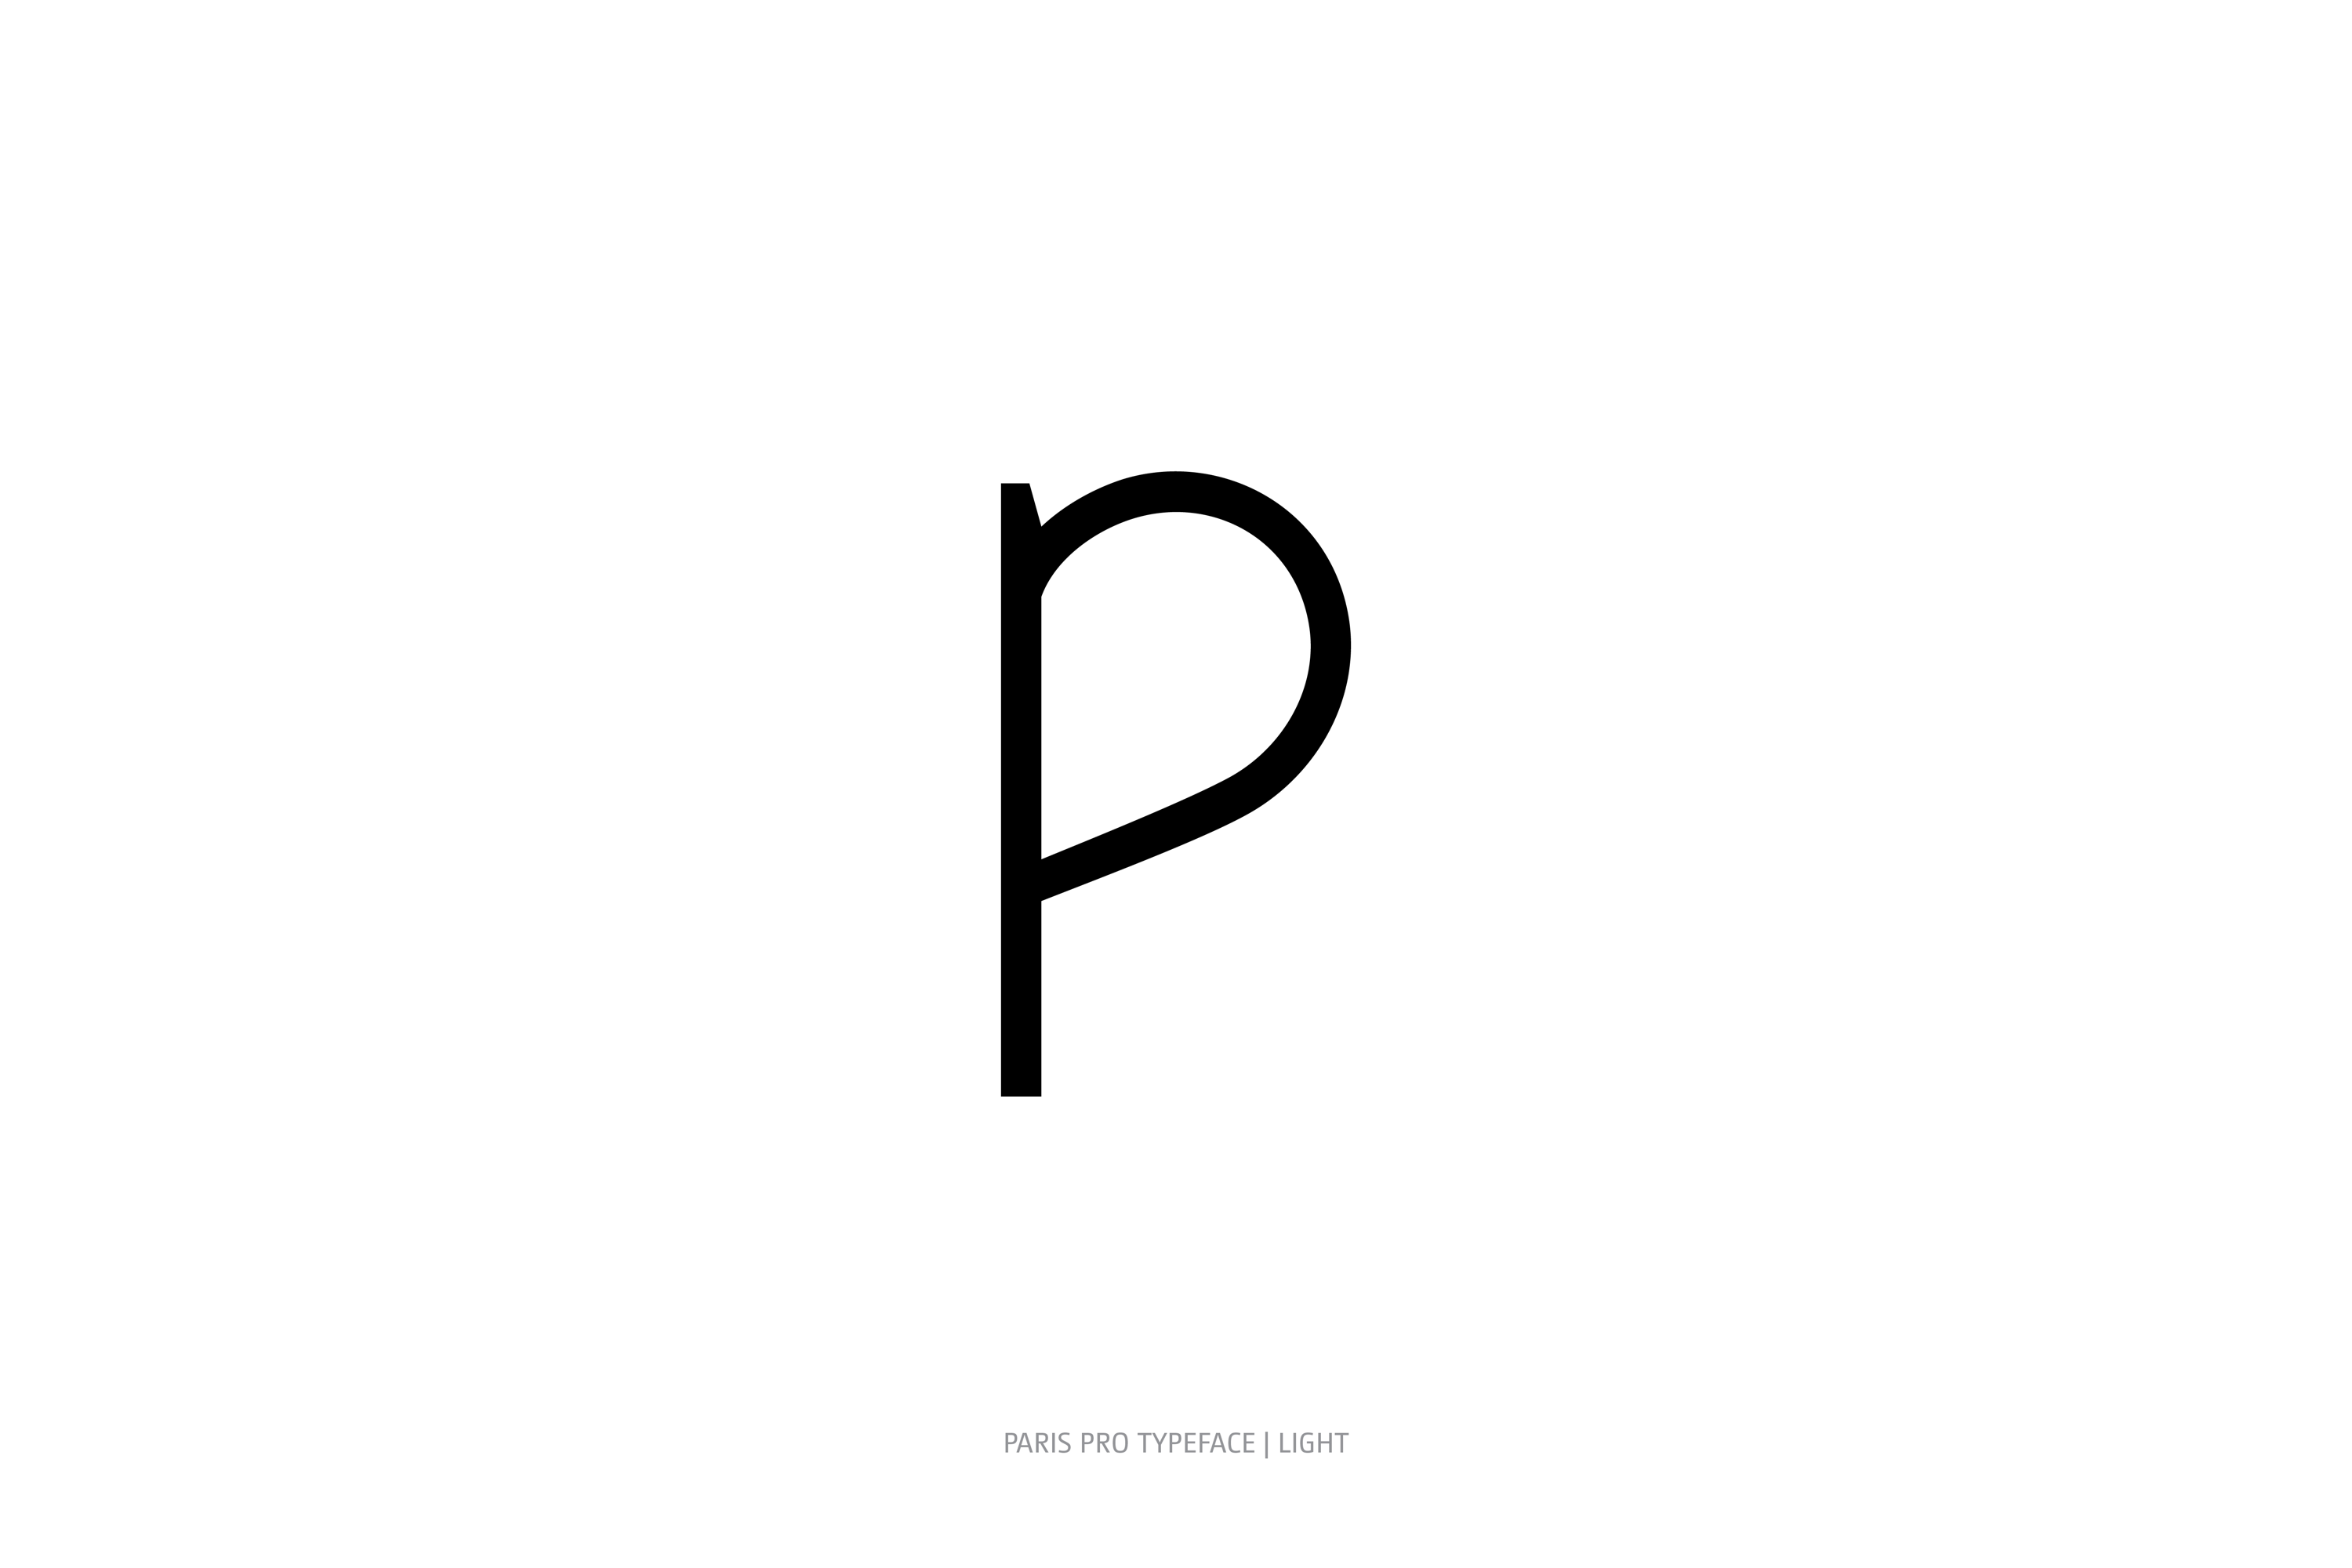 Paris Pro Typeface Light Style p